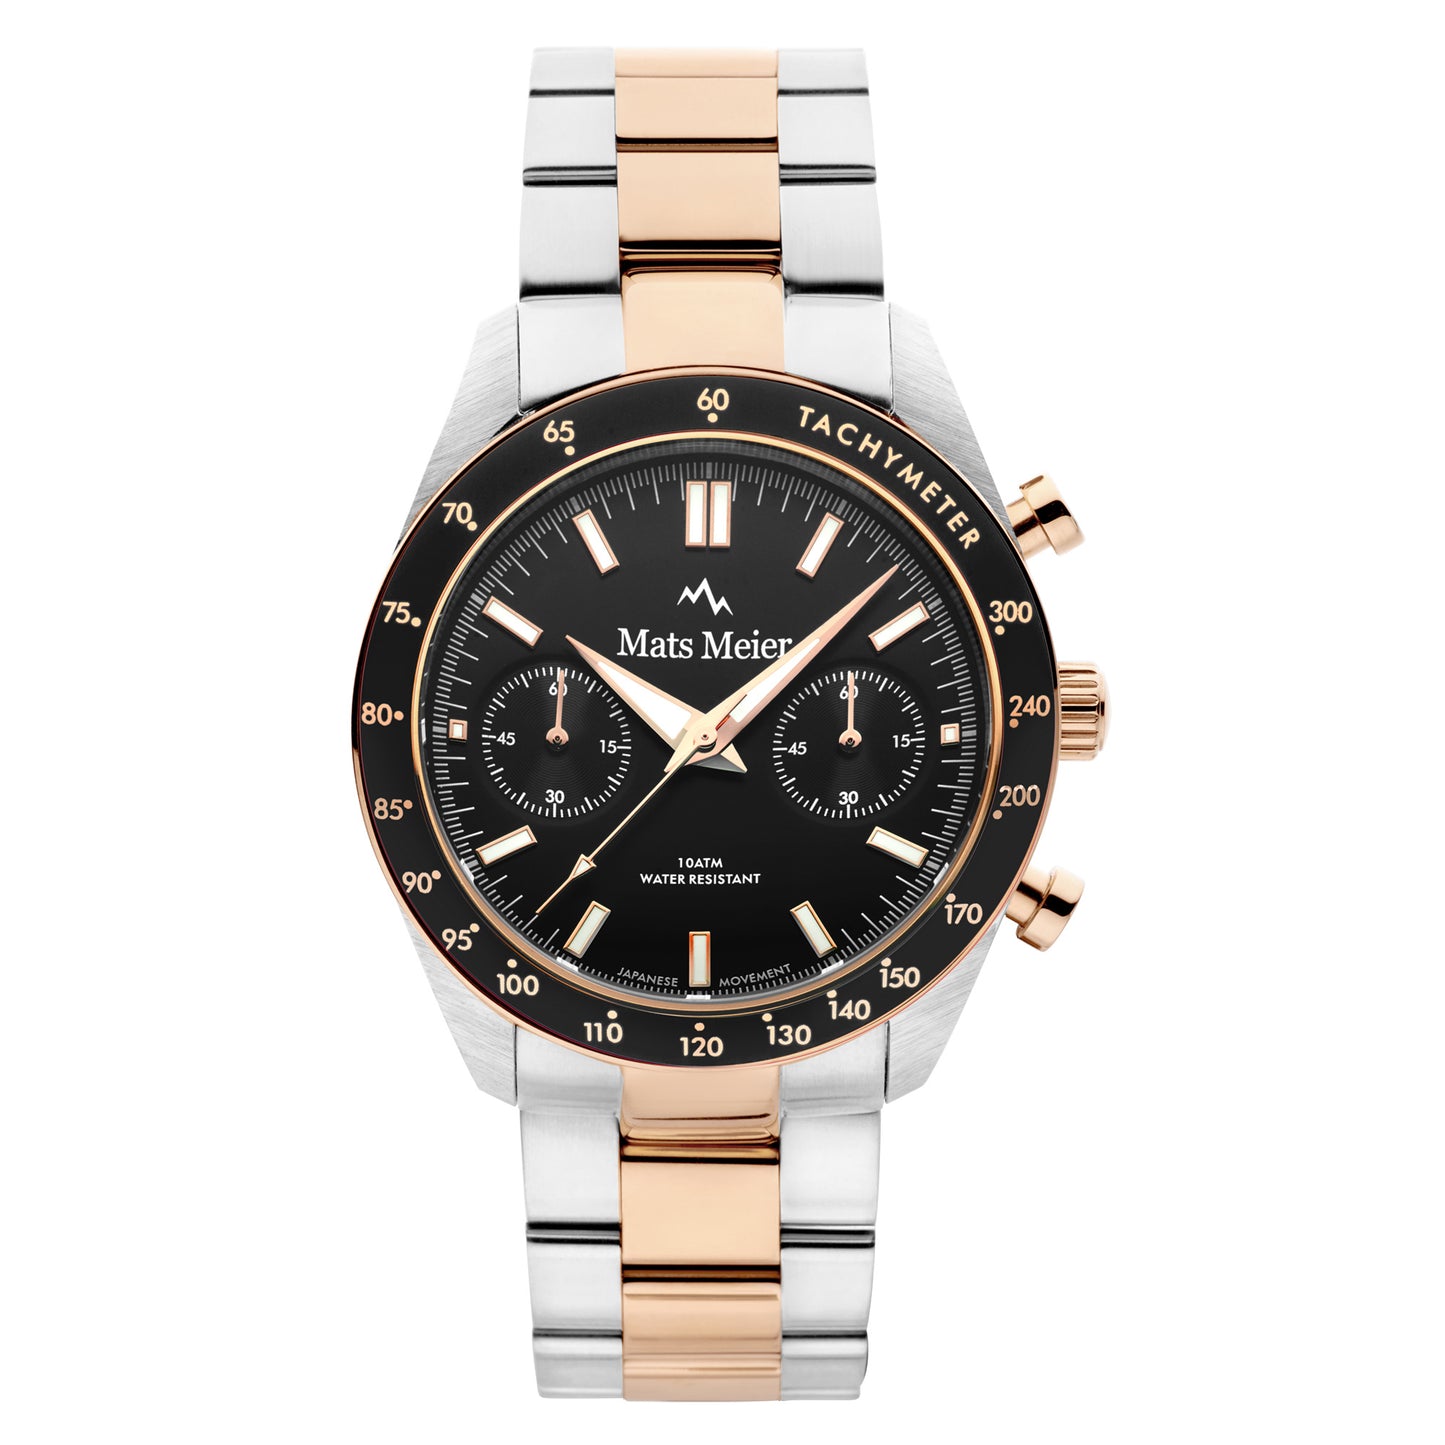 Arosa Racing cronografo orologio da uomo color oro rosa e nero